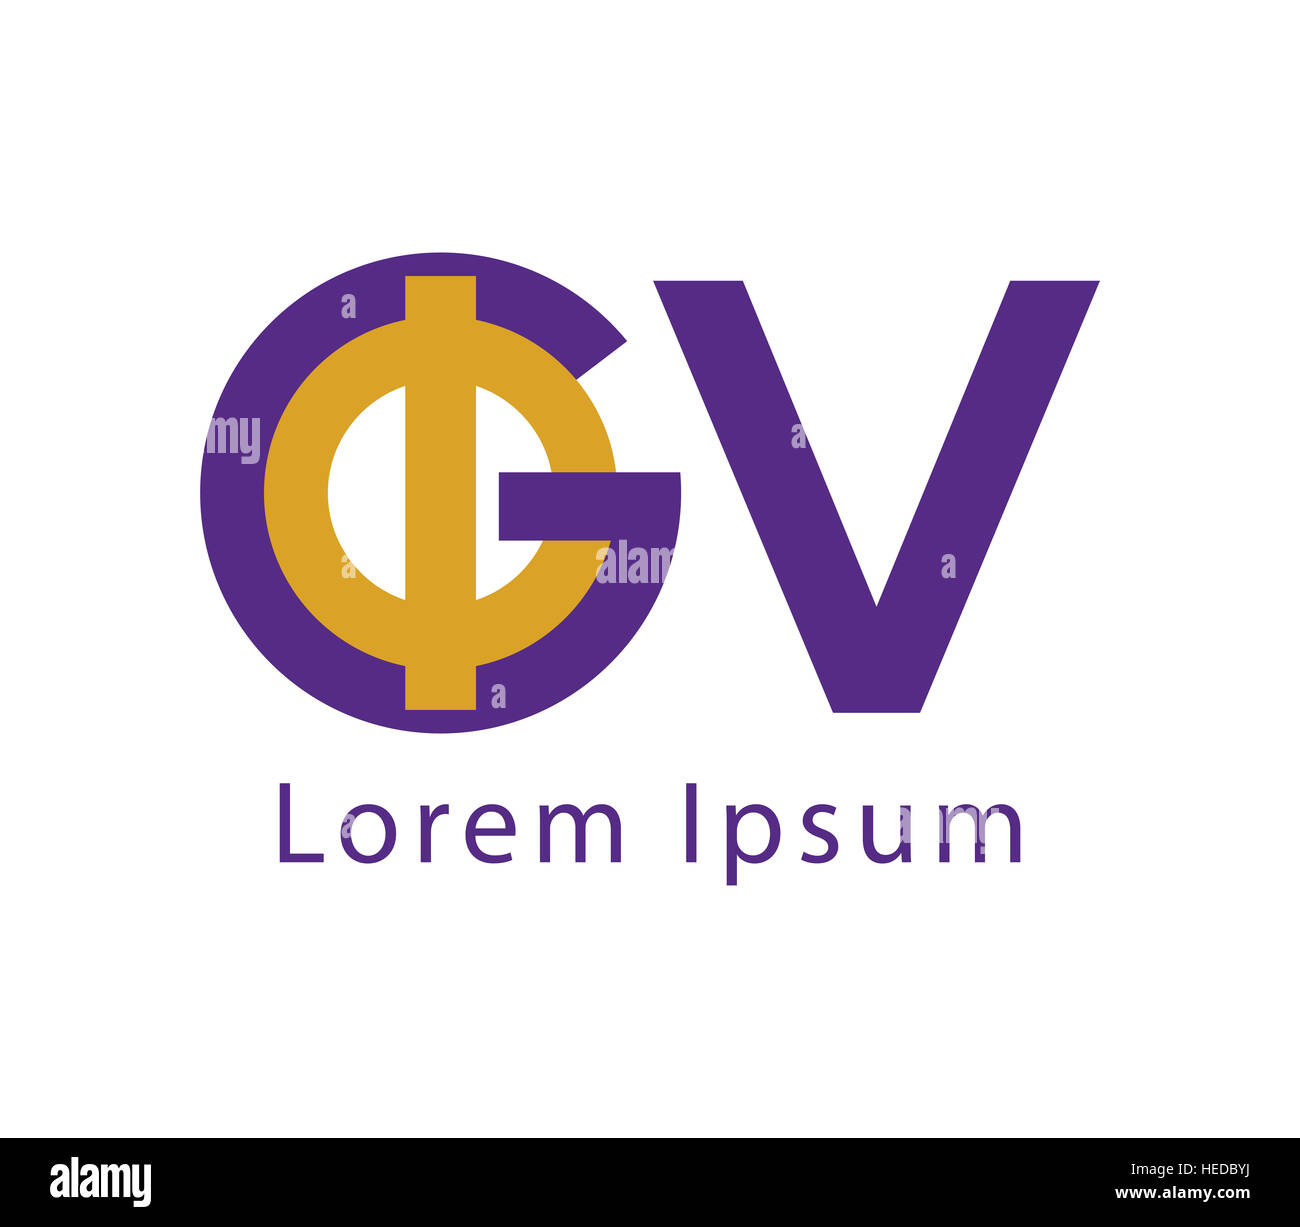 GV logo monogram with emblem style isolated on black background 4292735 ...